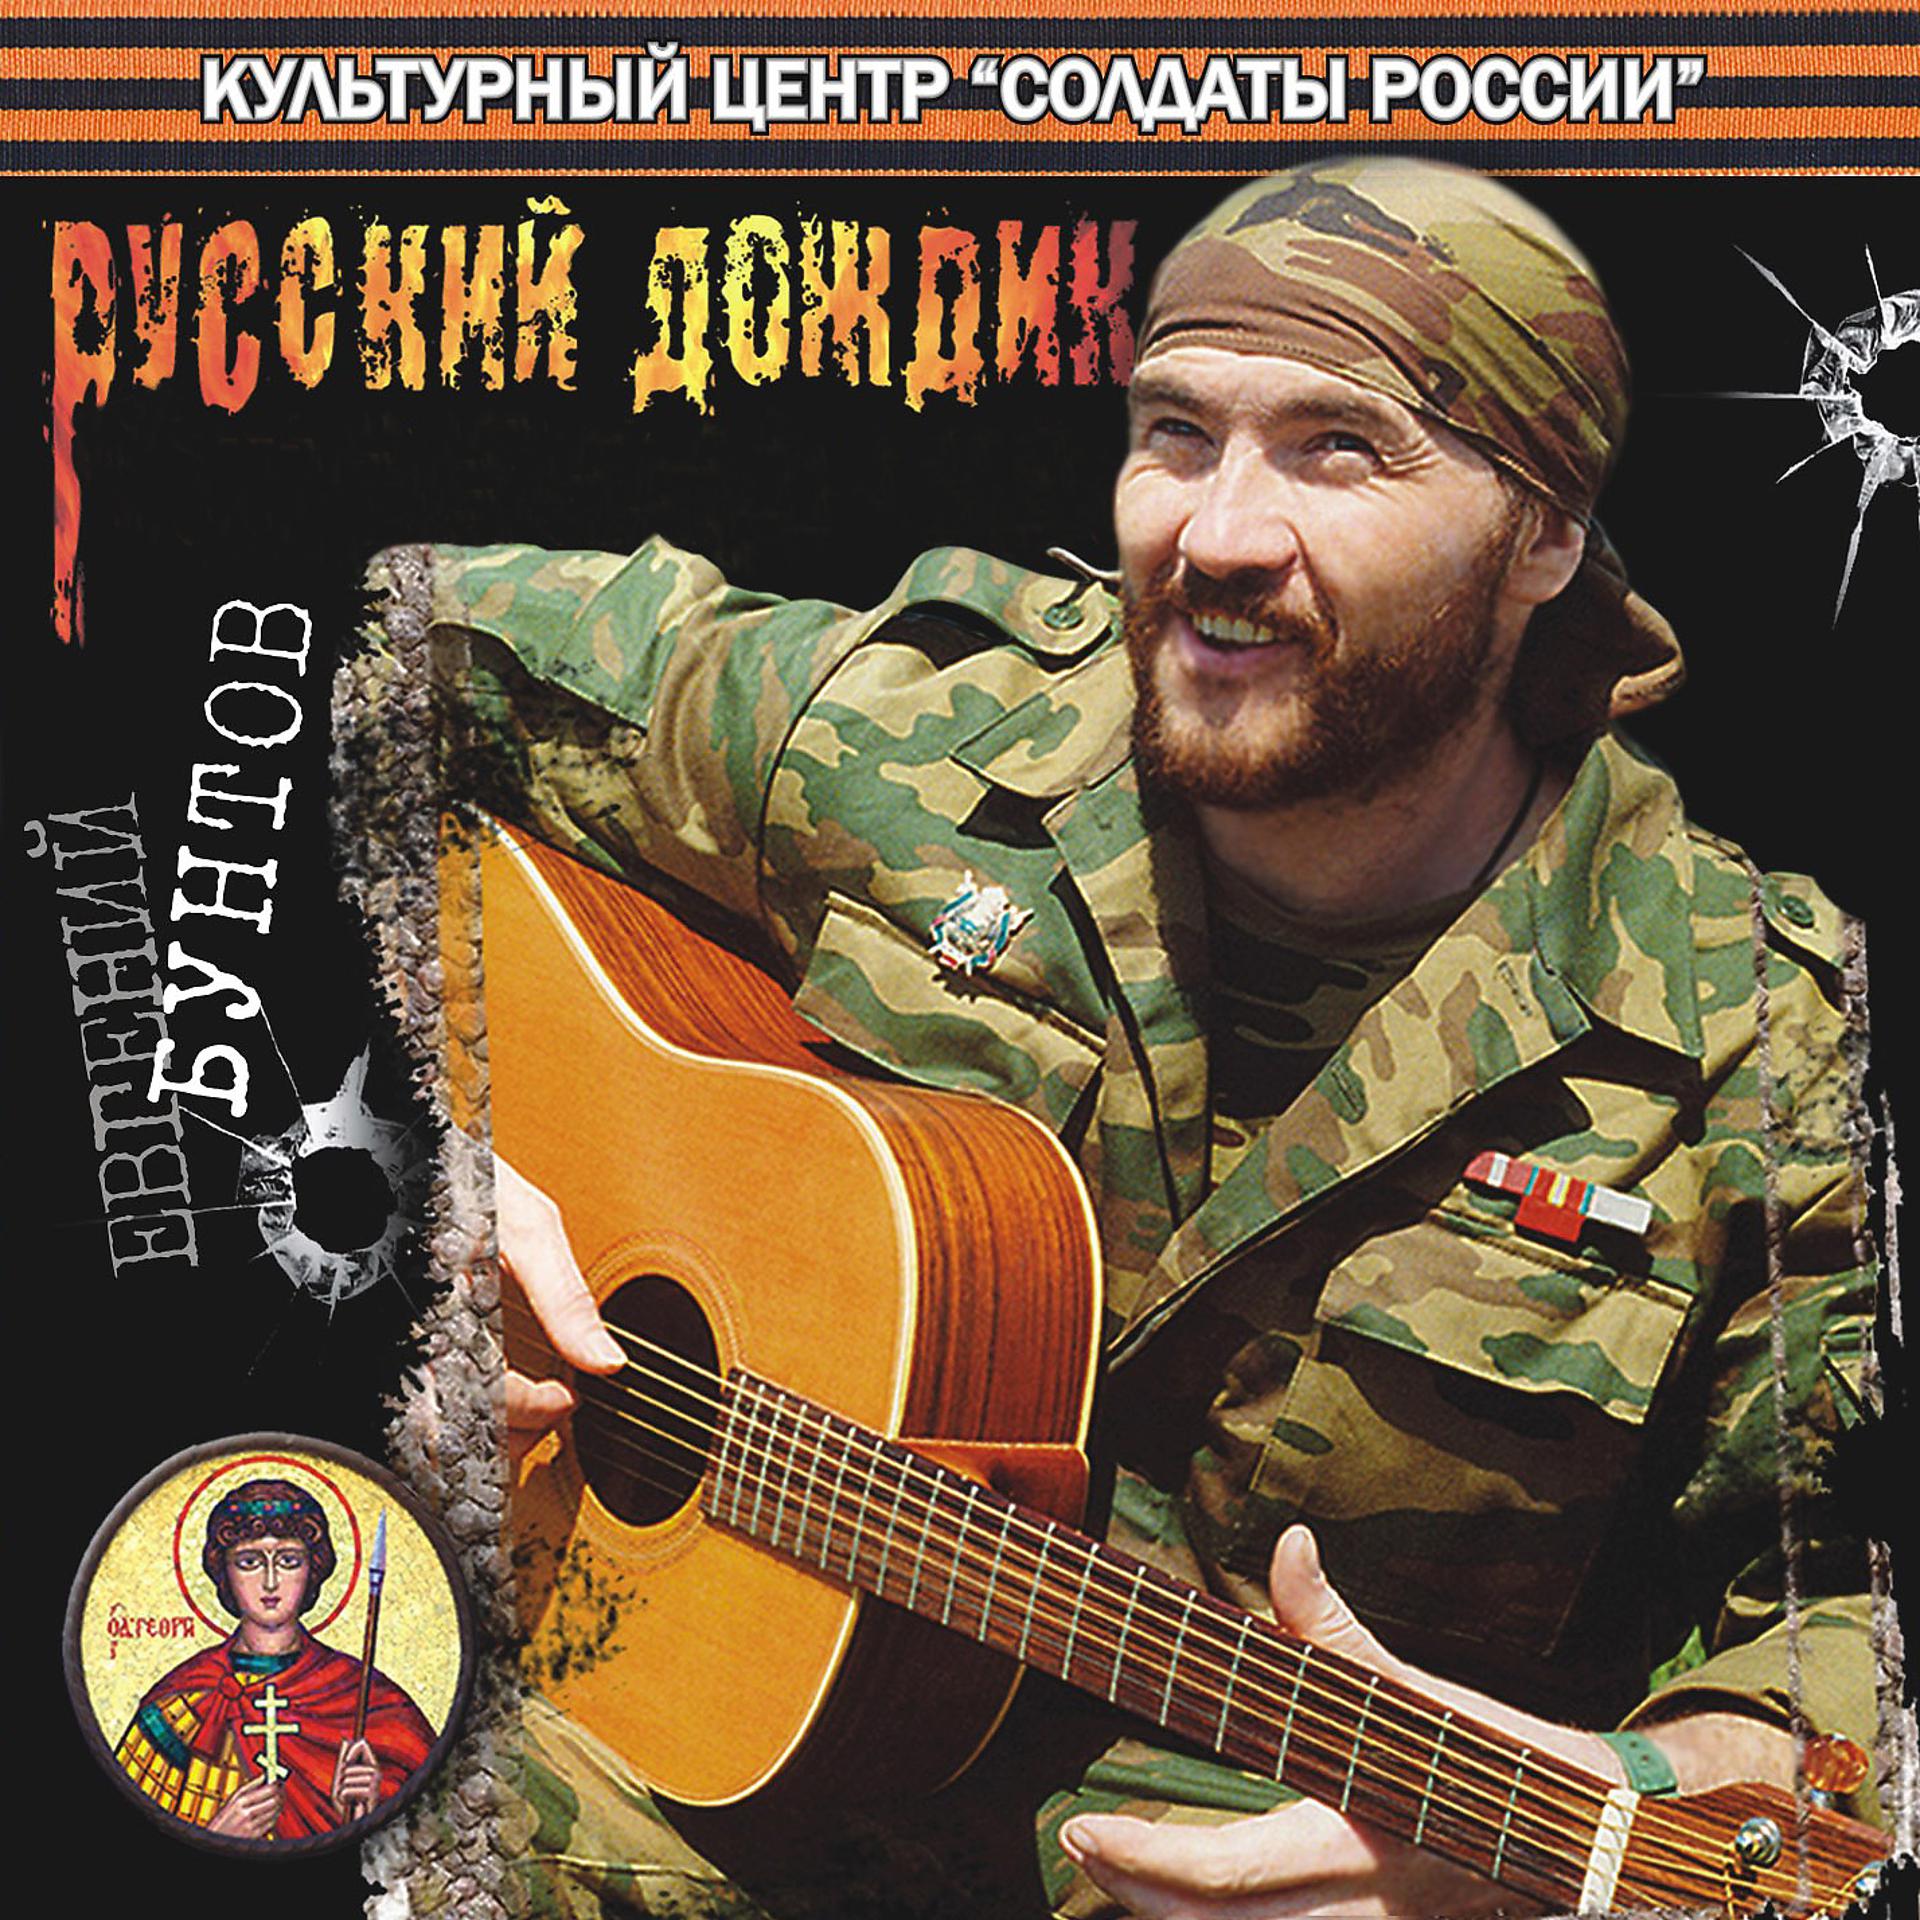 Певцы про Чечню военные. Песни про чеченскую войну. Певцы на войне. Военный исполнитель. Все песни про чечню